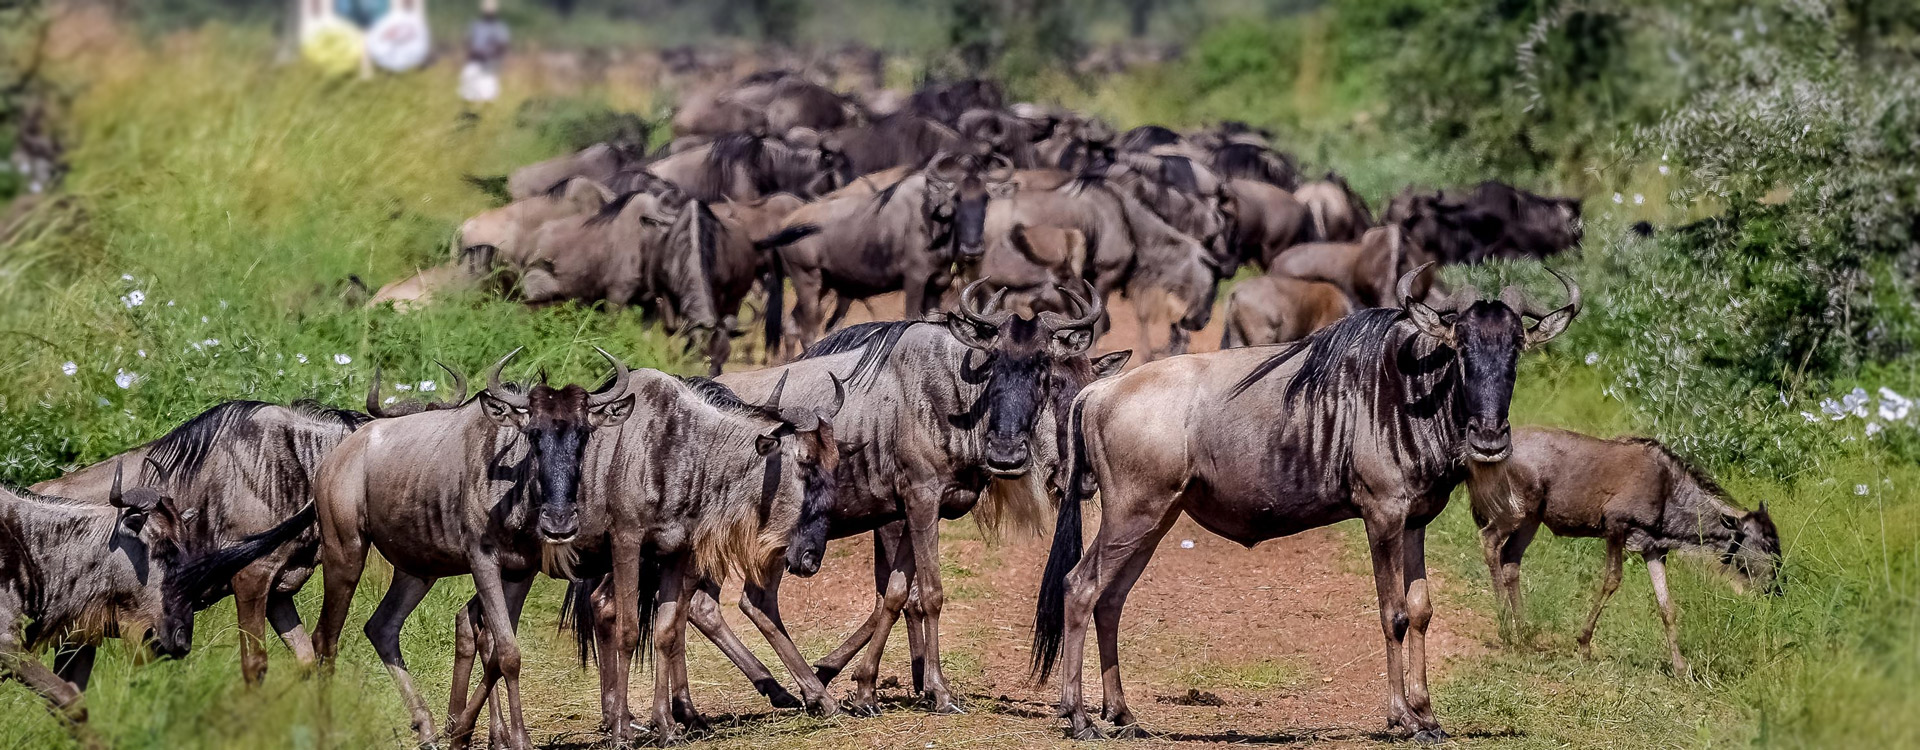 8 Days Wildebeest Migration Safari